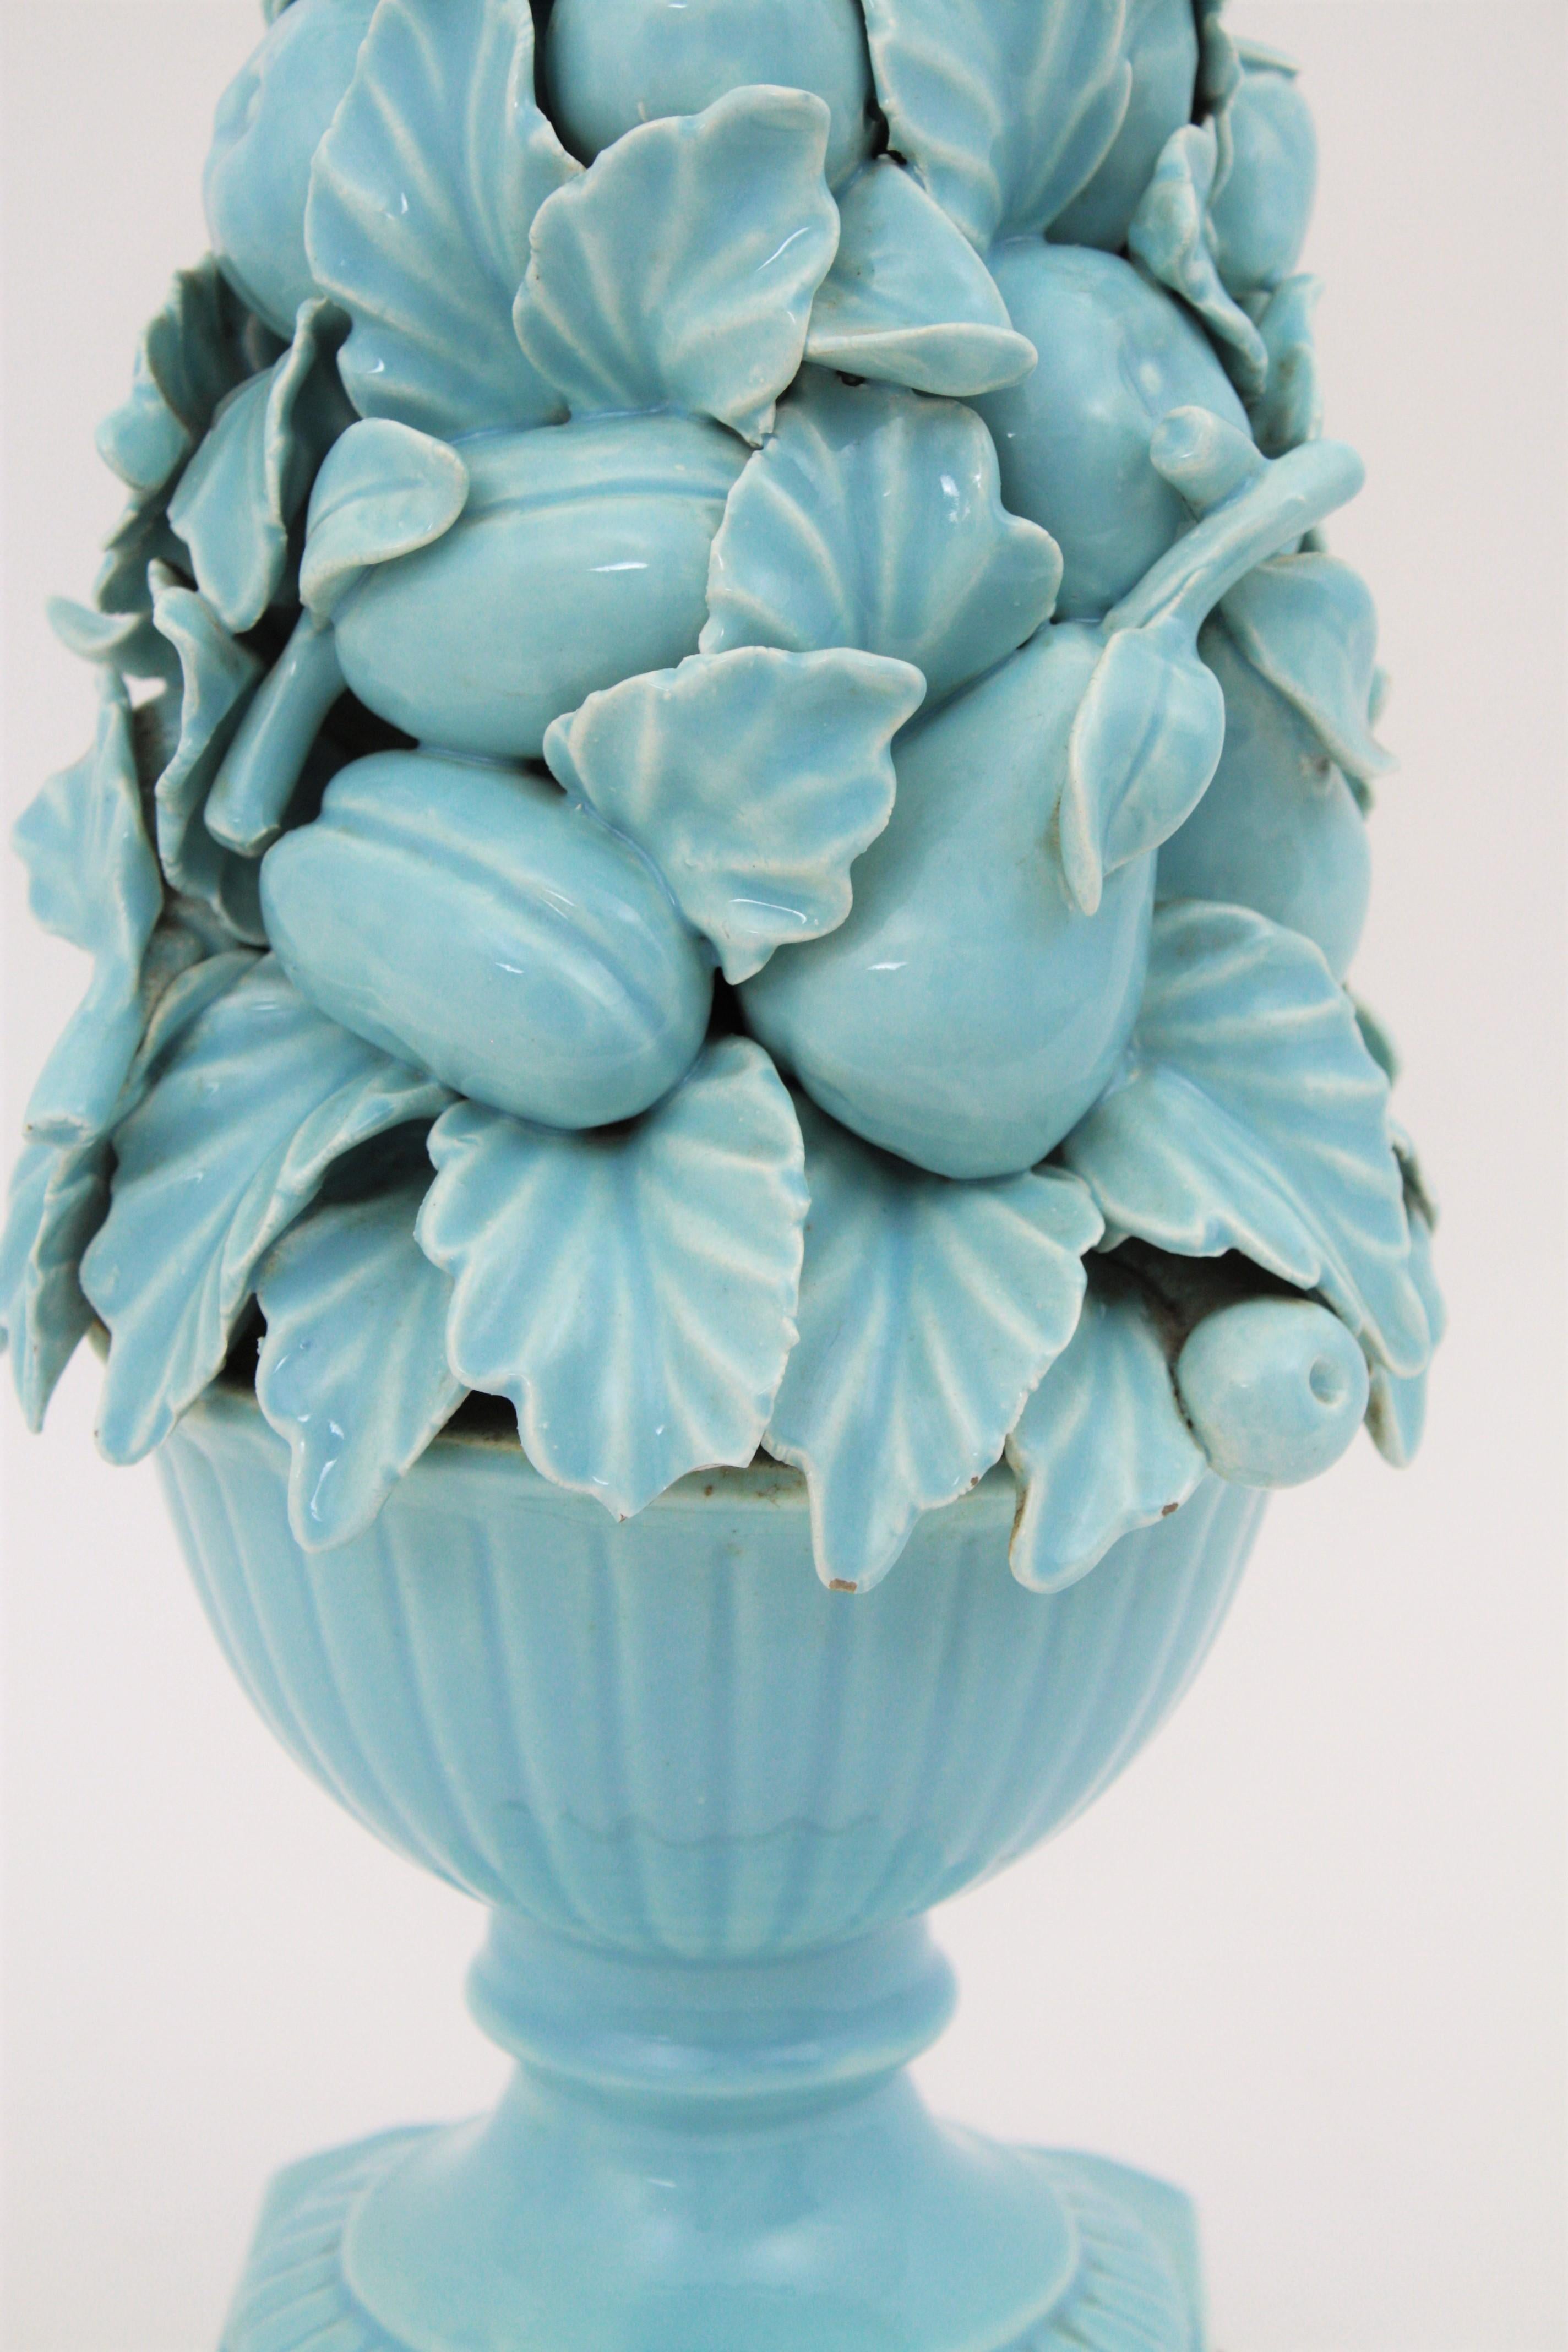 Spanish 1960s Majolica Blue Glazed Manises Ceramic Fruit Table Lamp 3